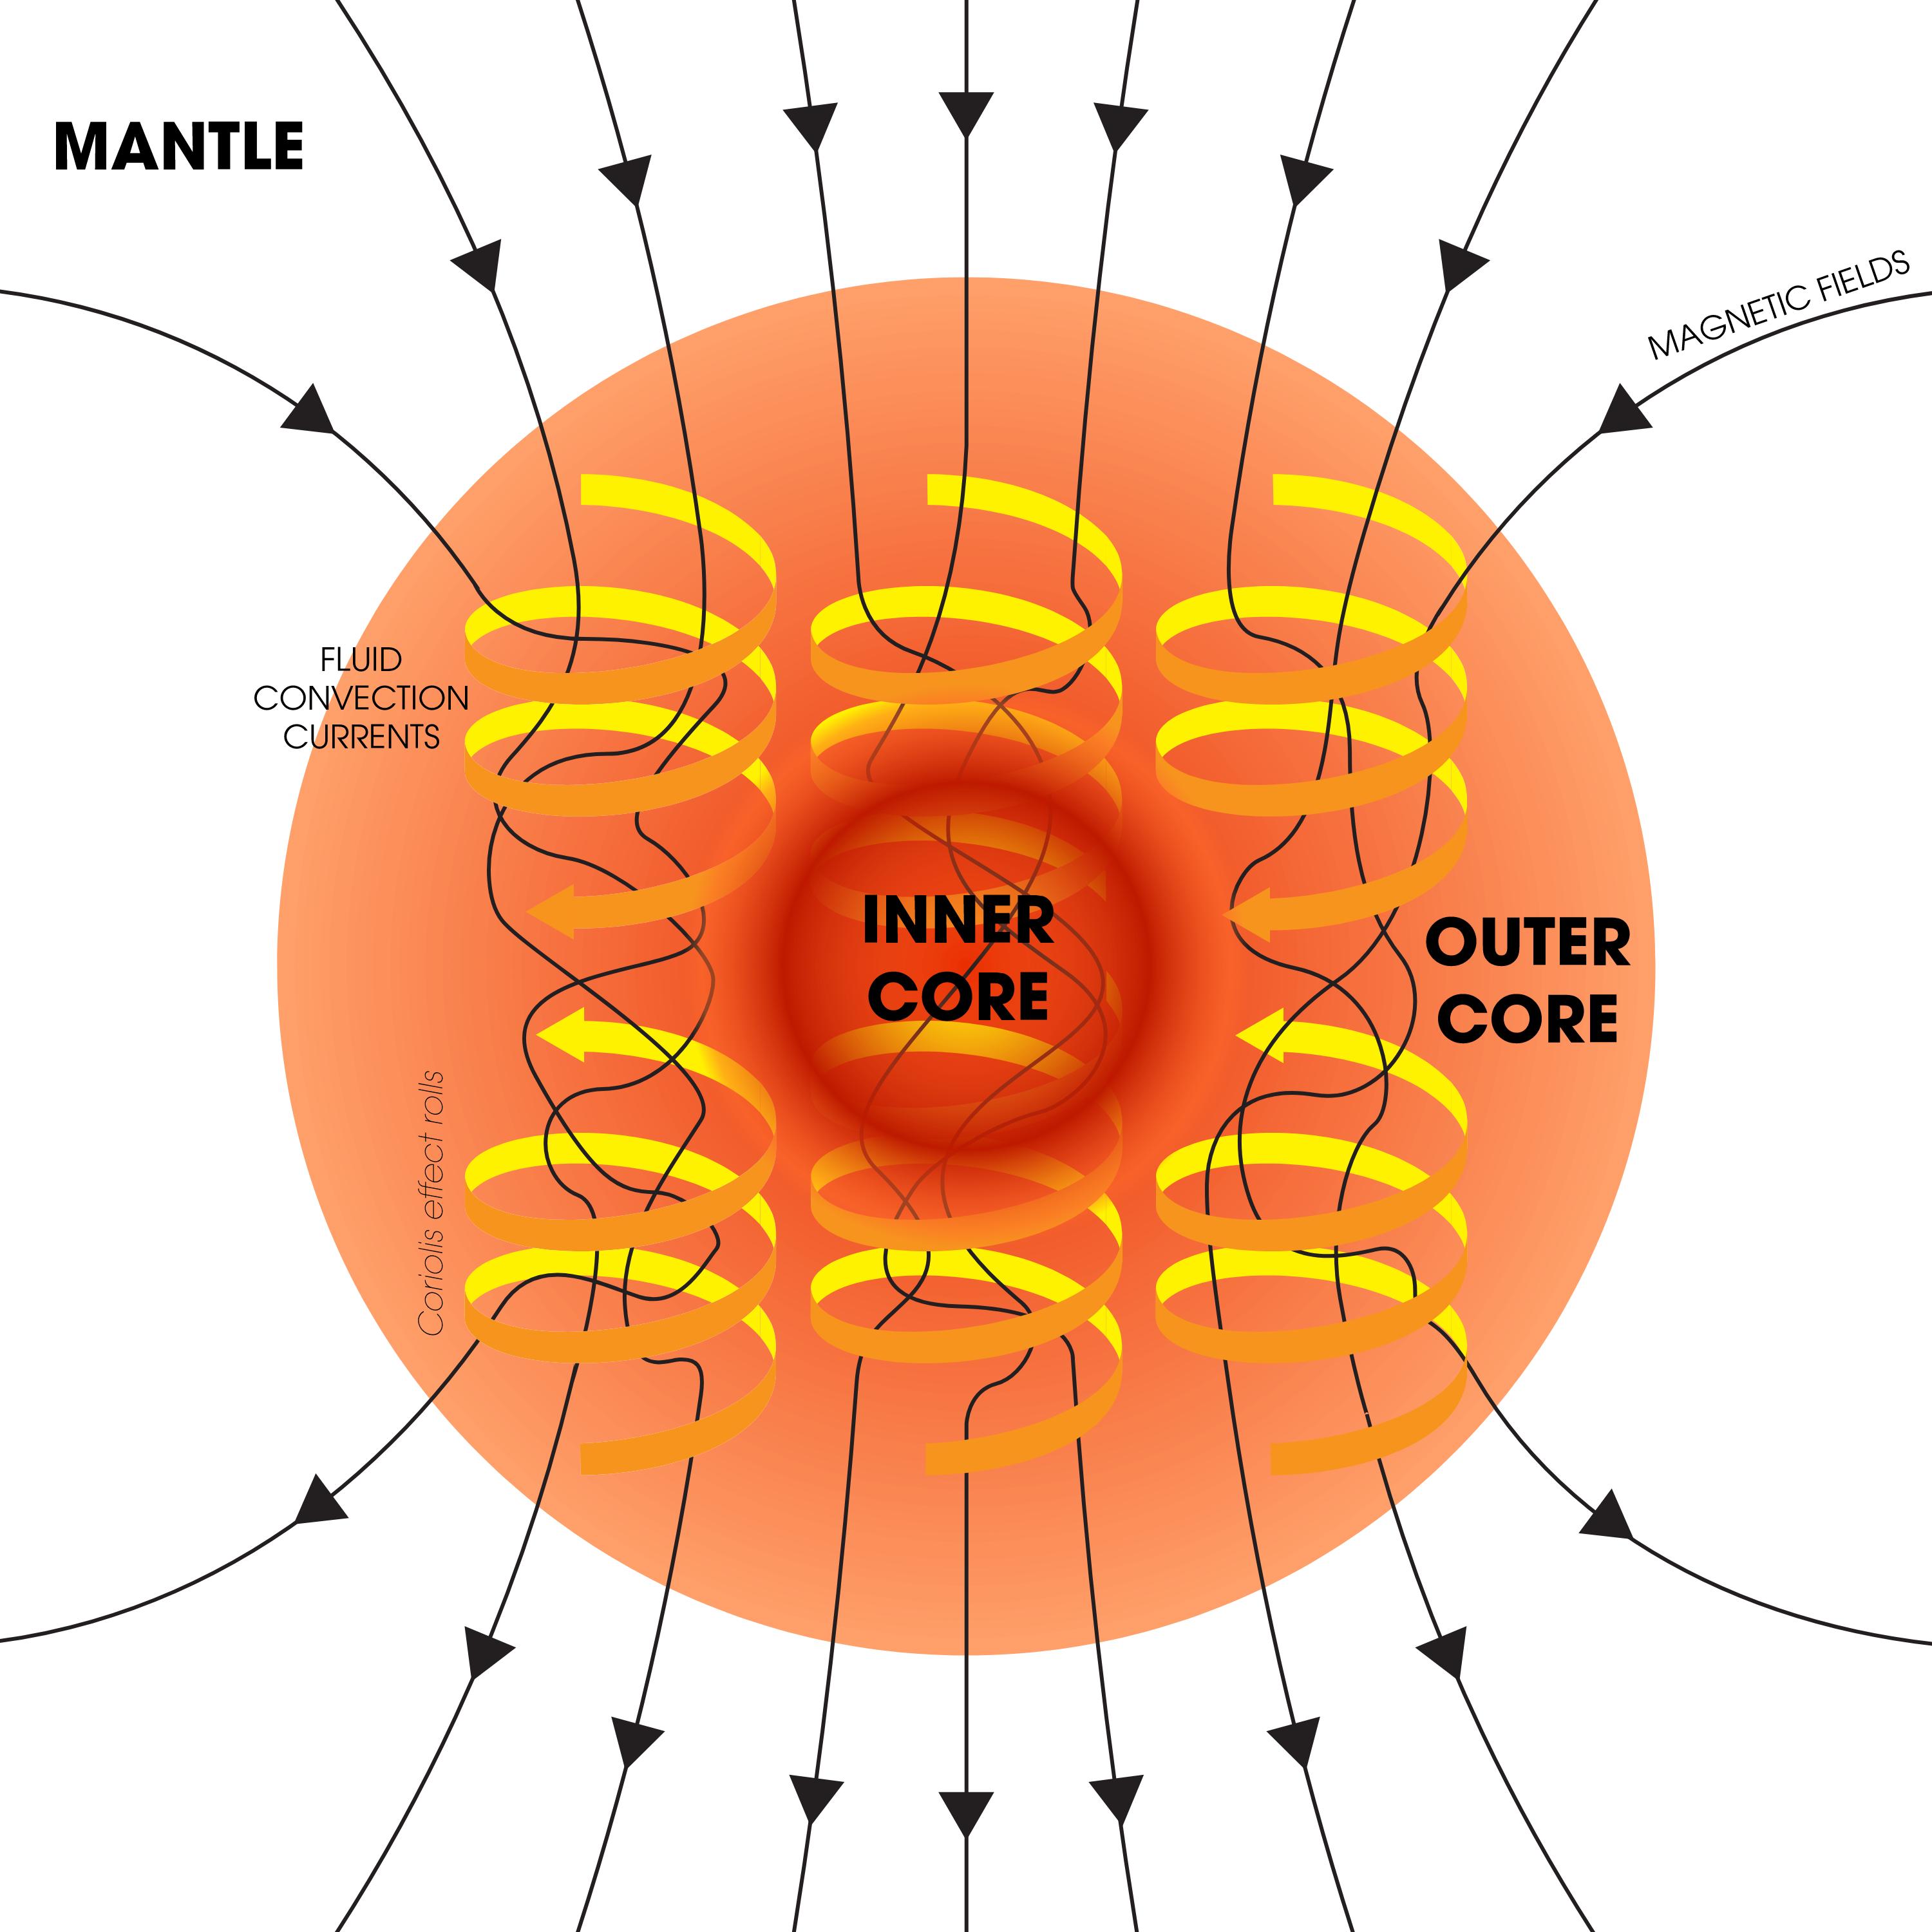 Schematyczna ilustracja działania mechanizmu dynama konwekcyjnego wewnątrz Ziemi. Ruch ciekłego żelaza uczestniczącego w ruchach konwekcyjnych w zewnętrznym obszarze jądra (ang. outer core) jest porządkowany w spirale przez ziemską rotację. W ten sposób generuje się wielkoskalowe pole magnetyczne Ziemi. Źródło: Andrew Z. Colvin / Wikipedia